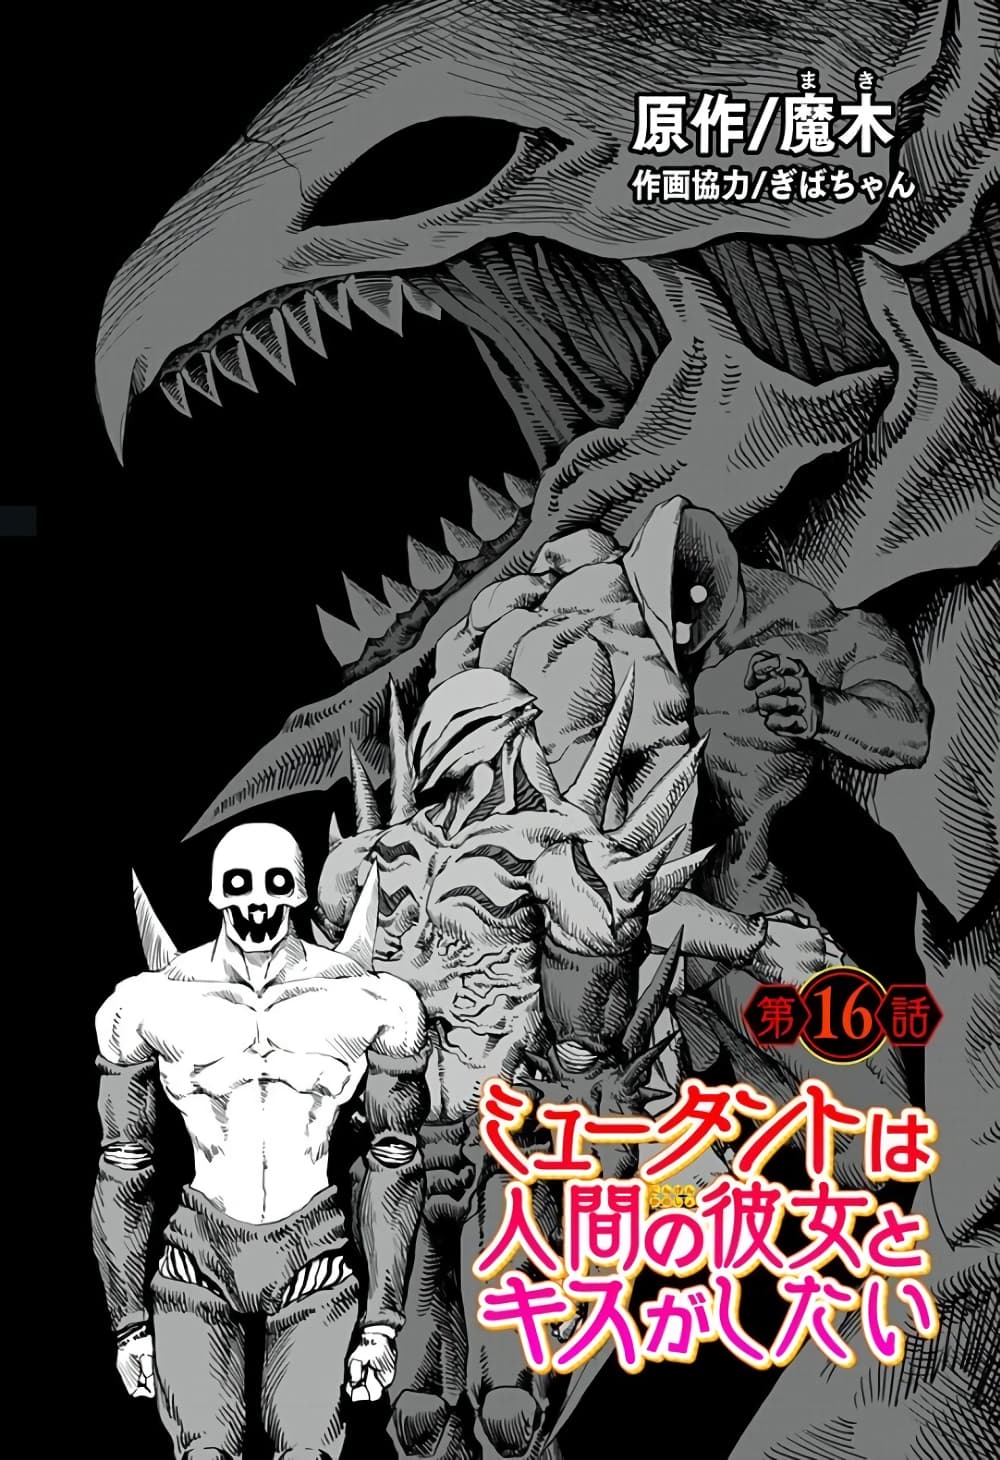 อ่านการ์ตูน Mutant wa ningen no kanojo to kisu ga shitai 16 ภาพที่ 1